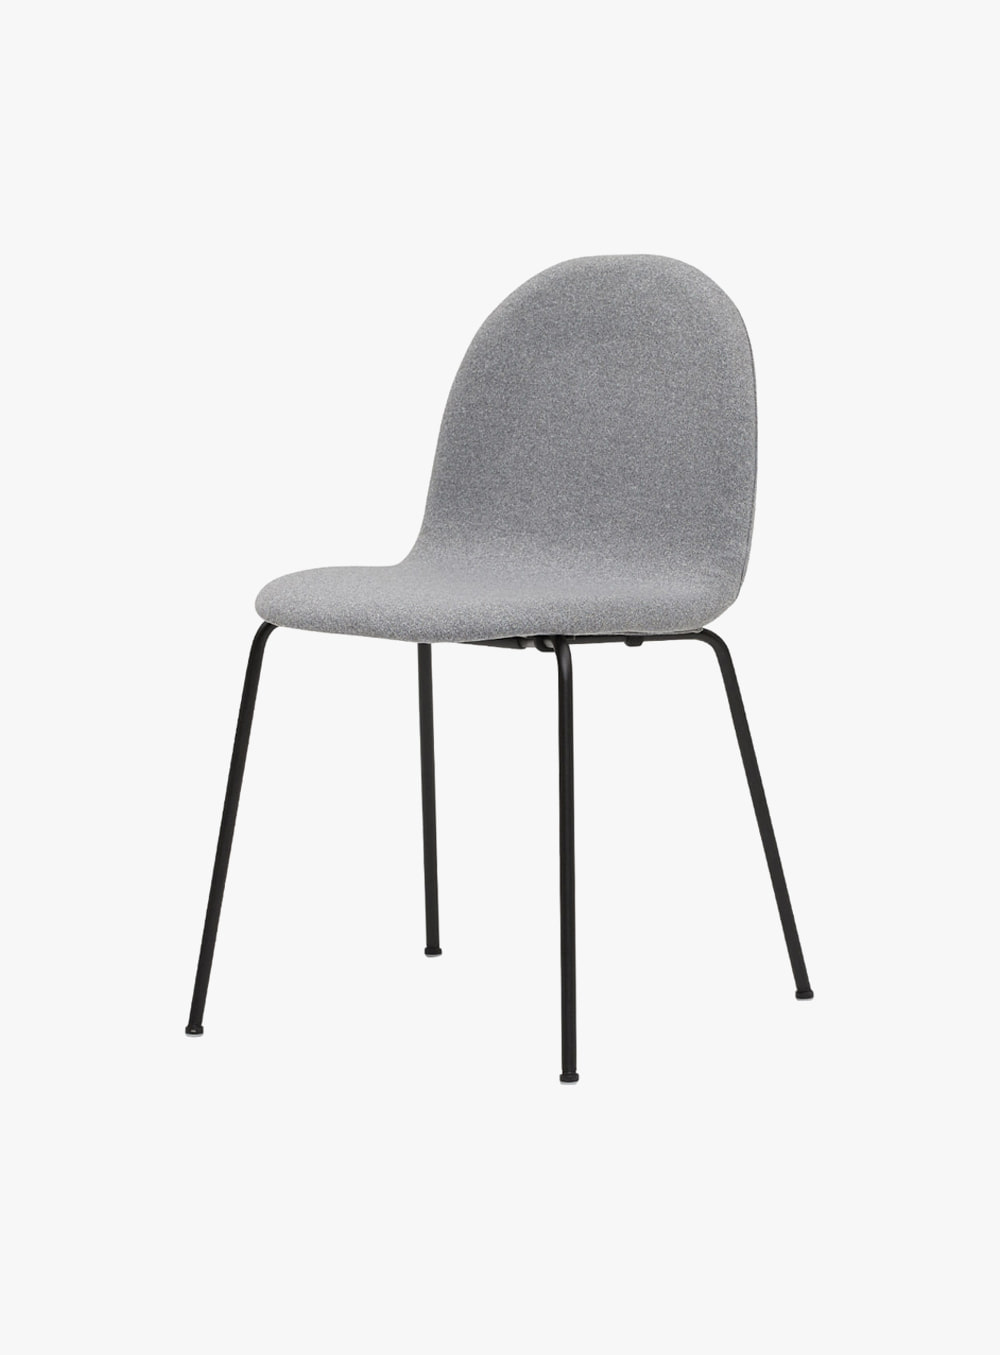 잭슨카멜레온 - Petalo Chair 패브릭 라이트그레이/블랙ㅣB6-C10